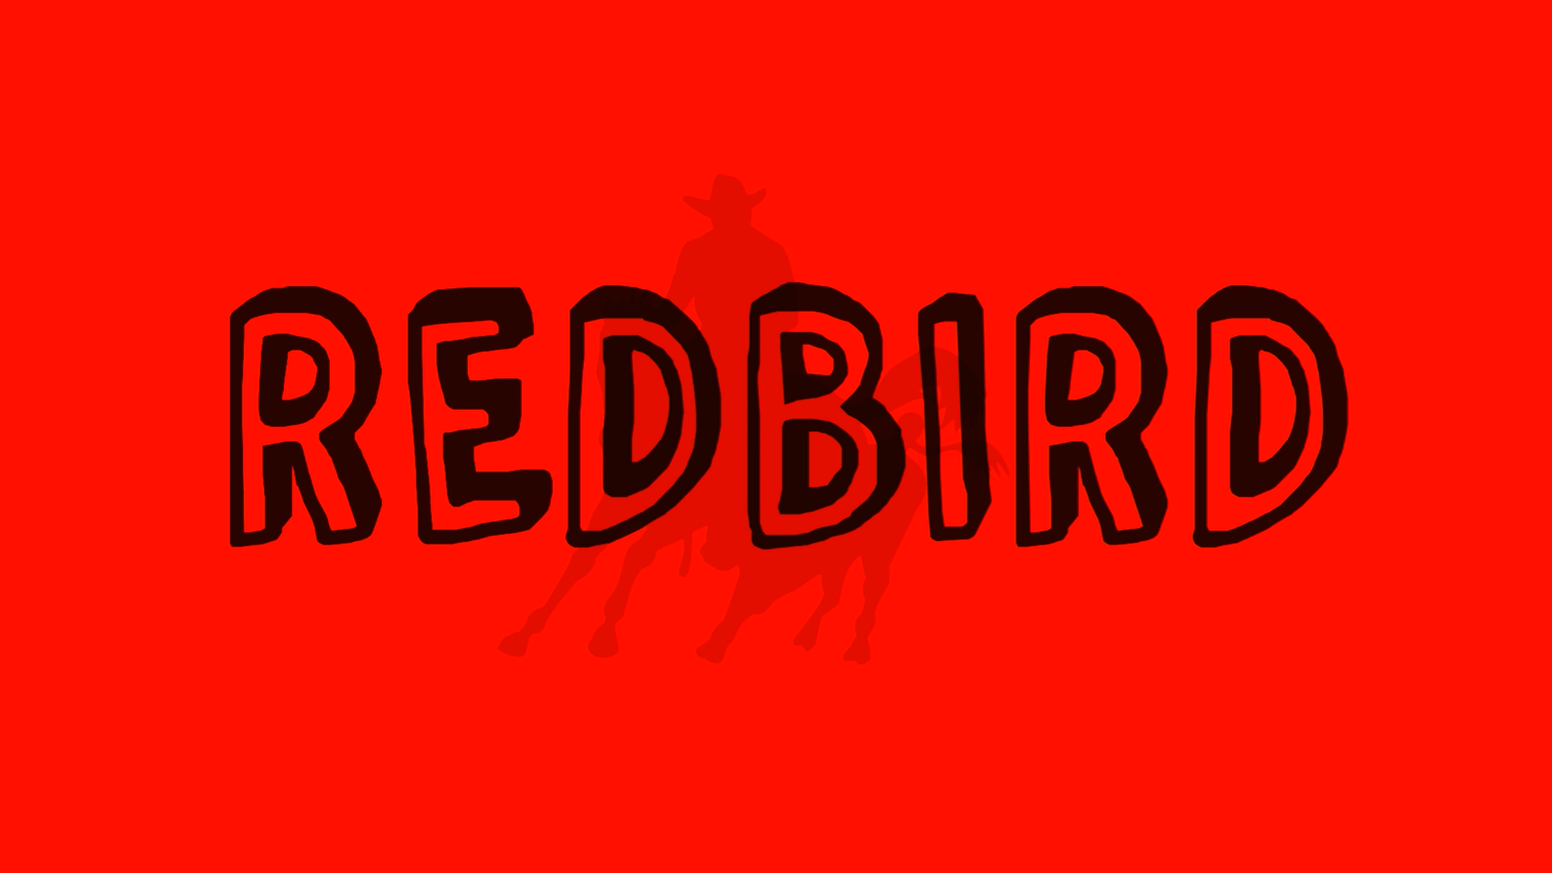 Red Bird Red a Logo - Redbird USC Thesis Film